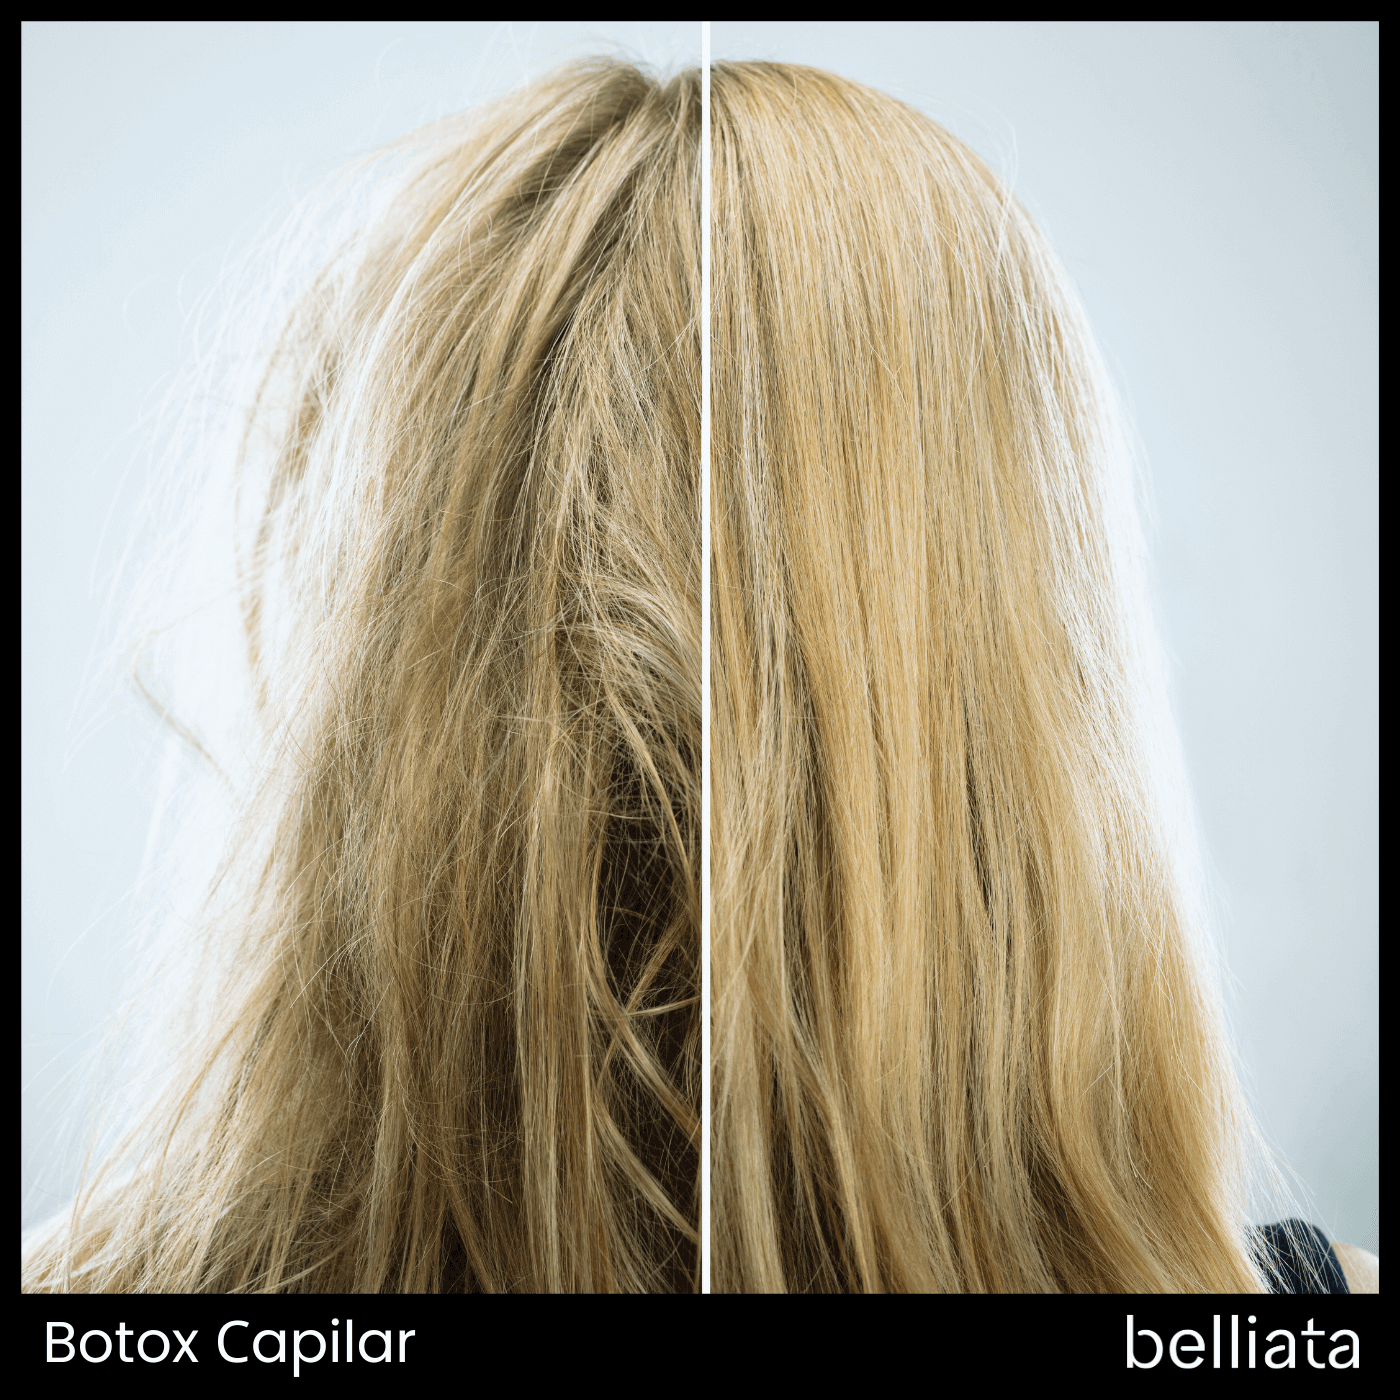 Botox Capilar - Todo lo Que Debe Saber | belliata.es